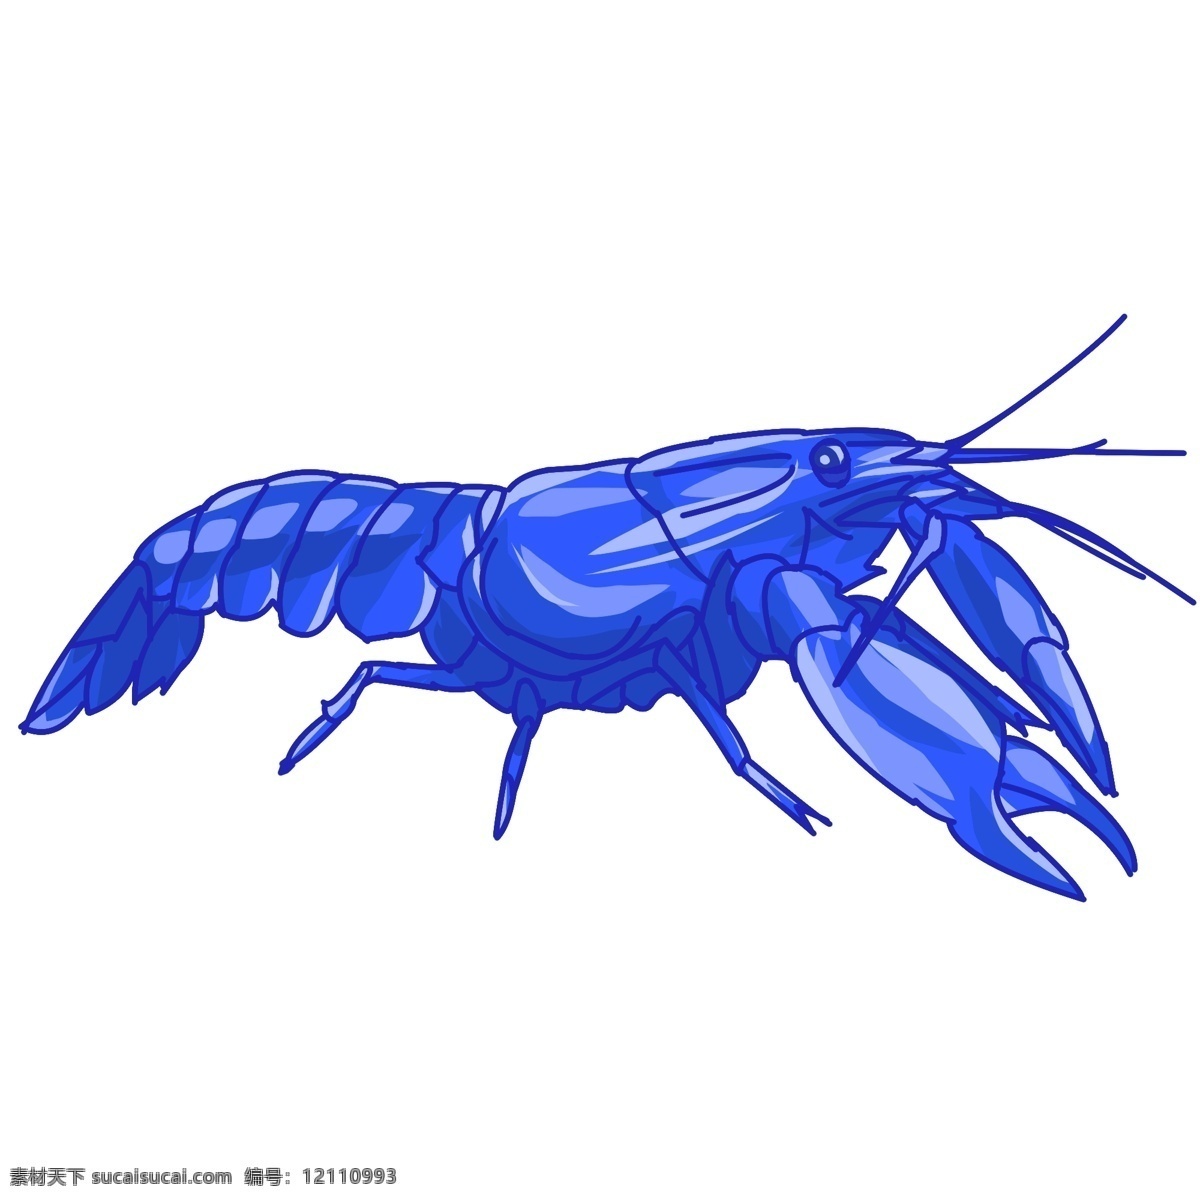 蓝色爬行龙虾 龙虾 动物 海鲜